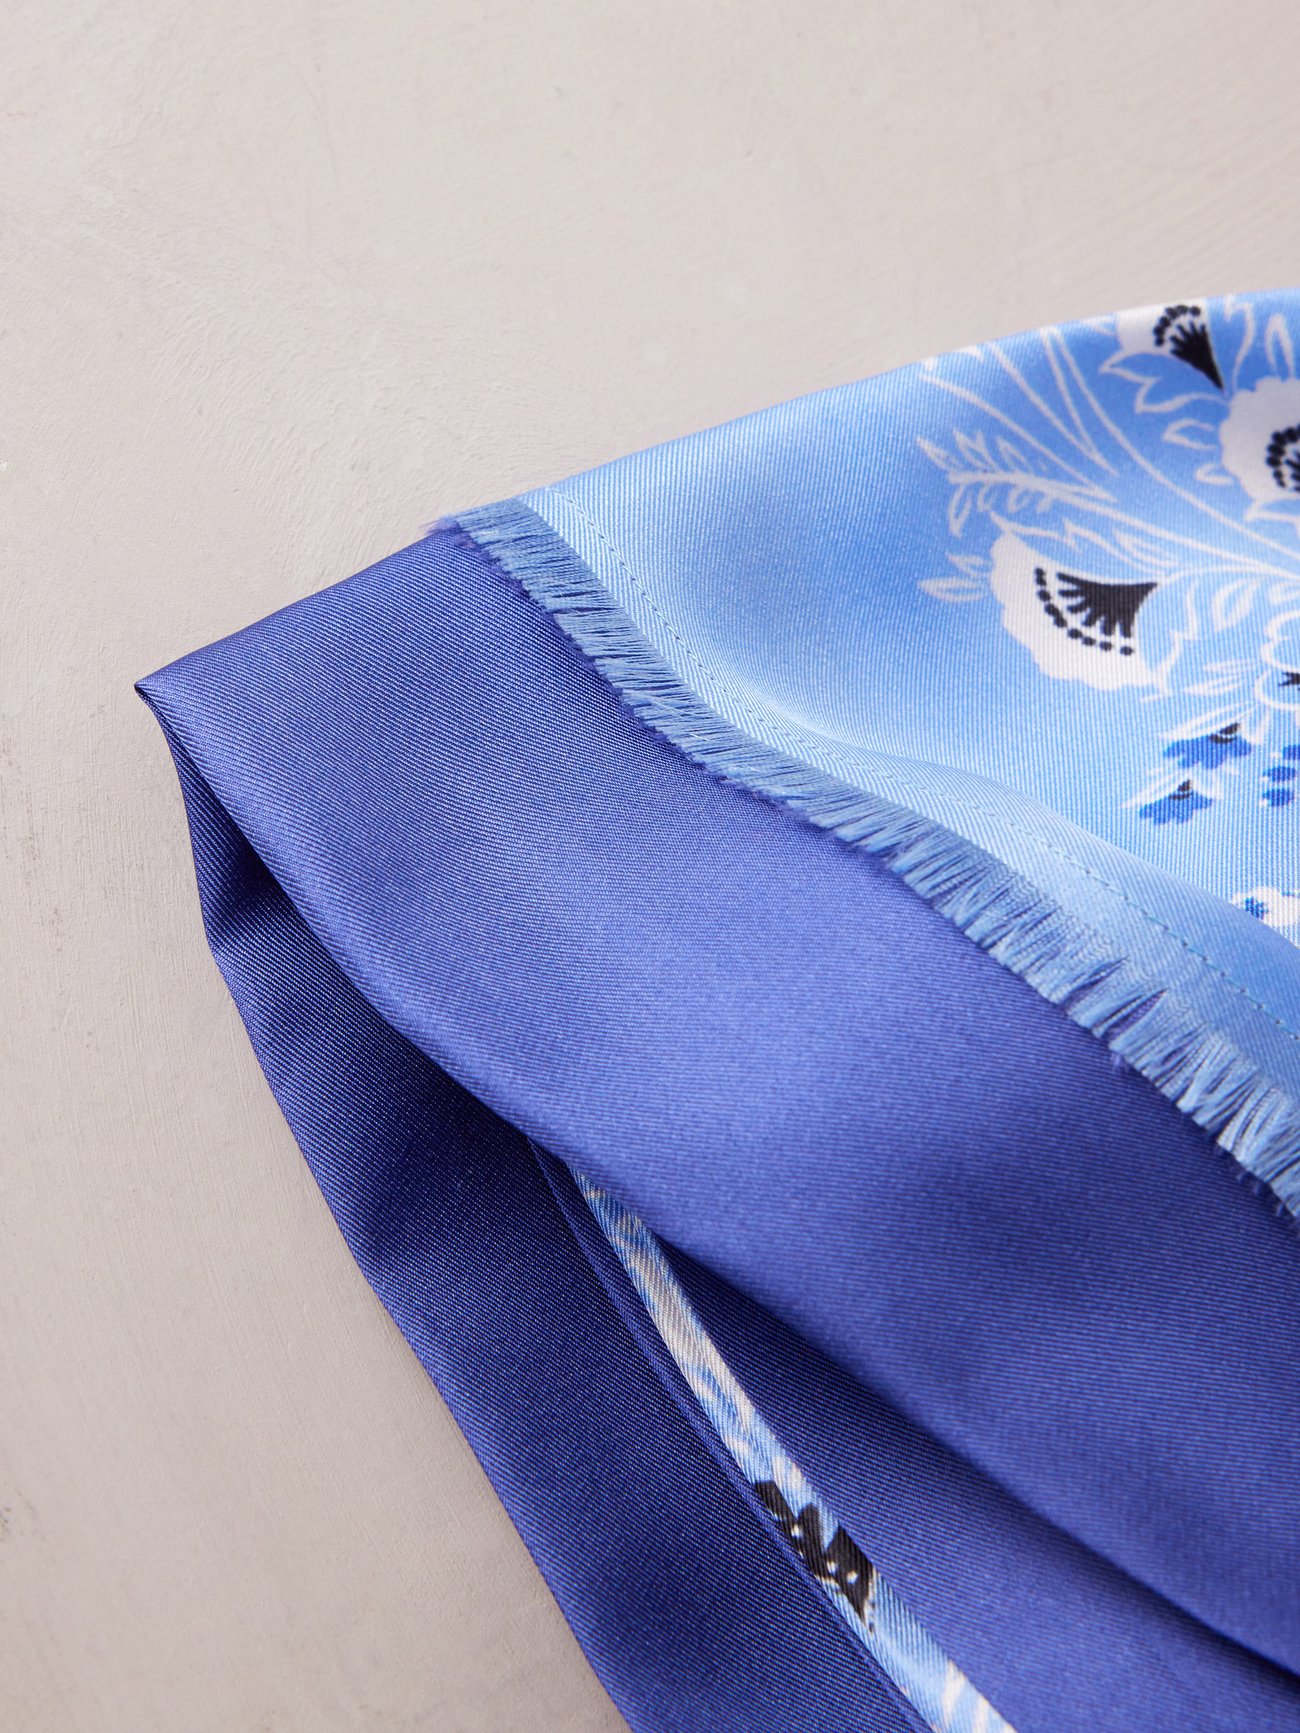 ETRO floral-print silk scarf - Blue